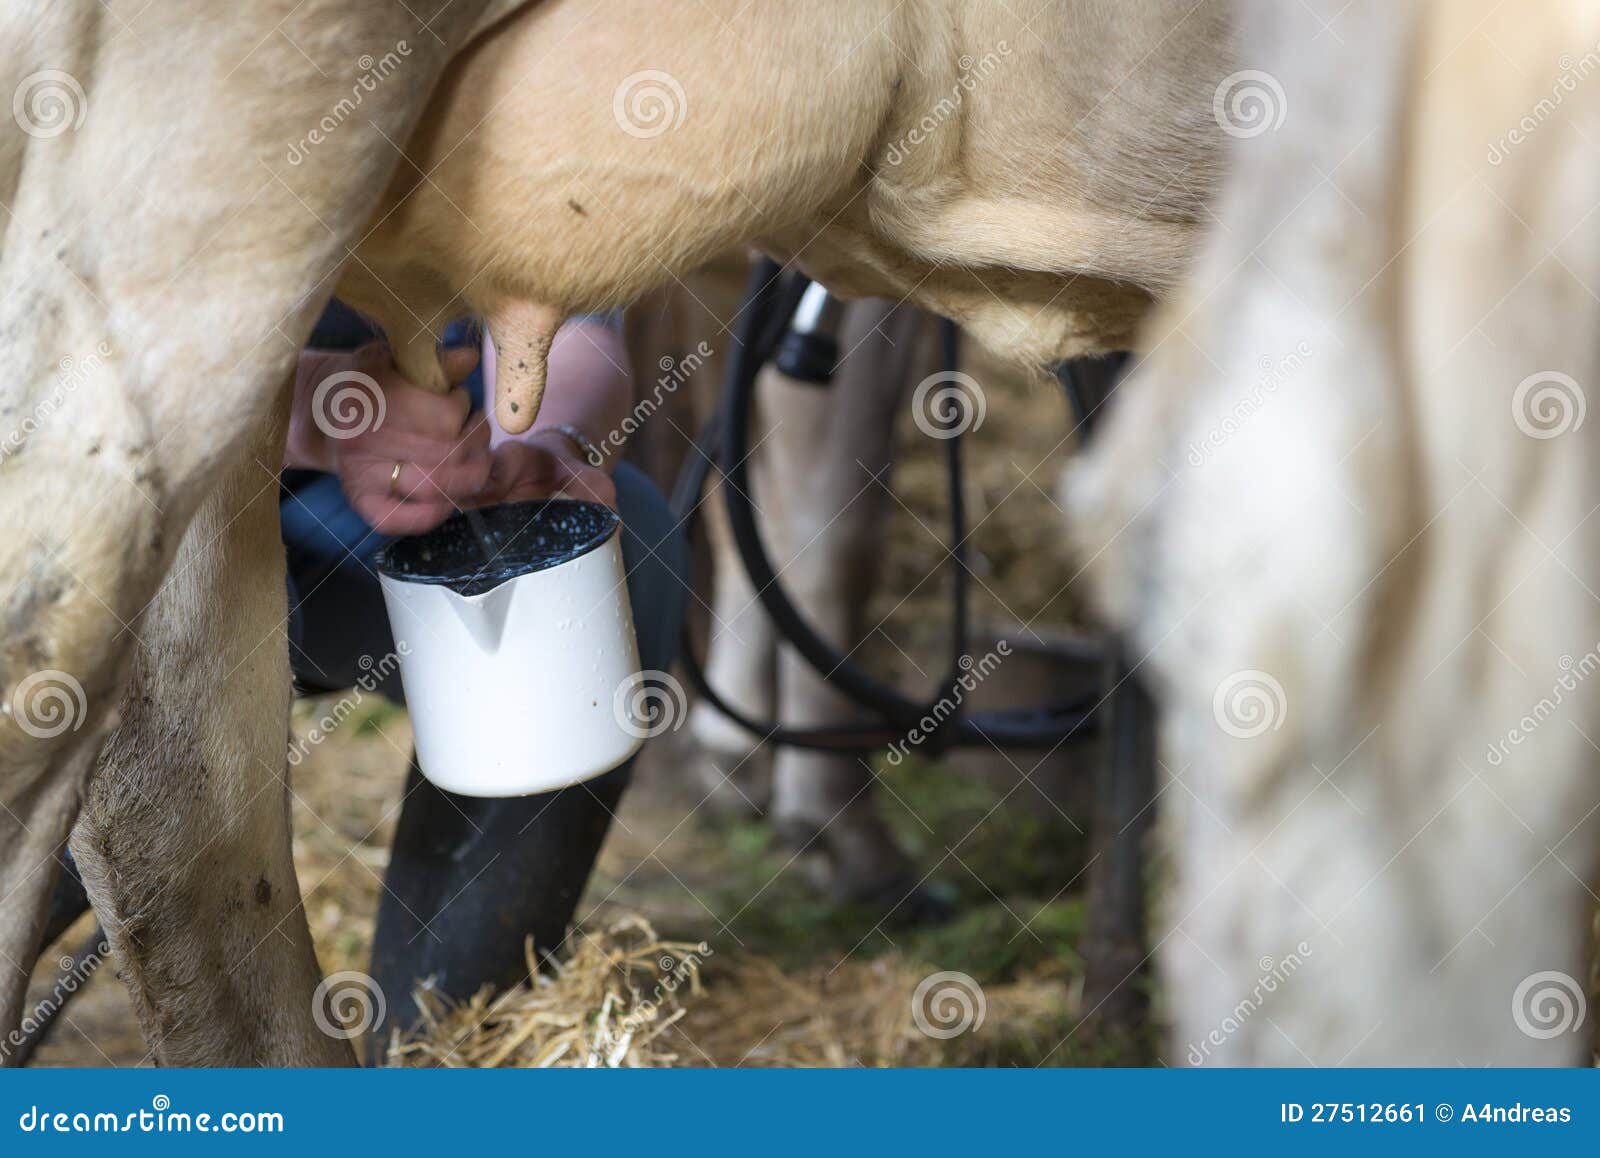 Теленок не пьет что делать. Отучить теленка от вымени коровы. Теленок пьет молоко у коровы.